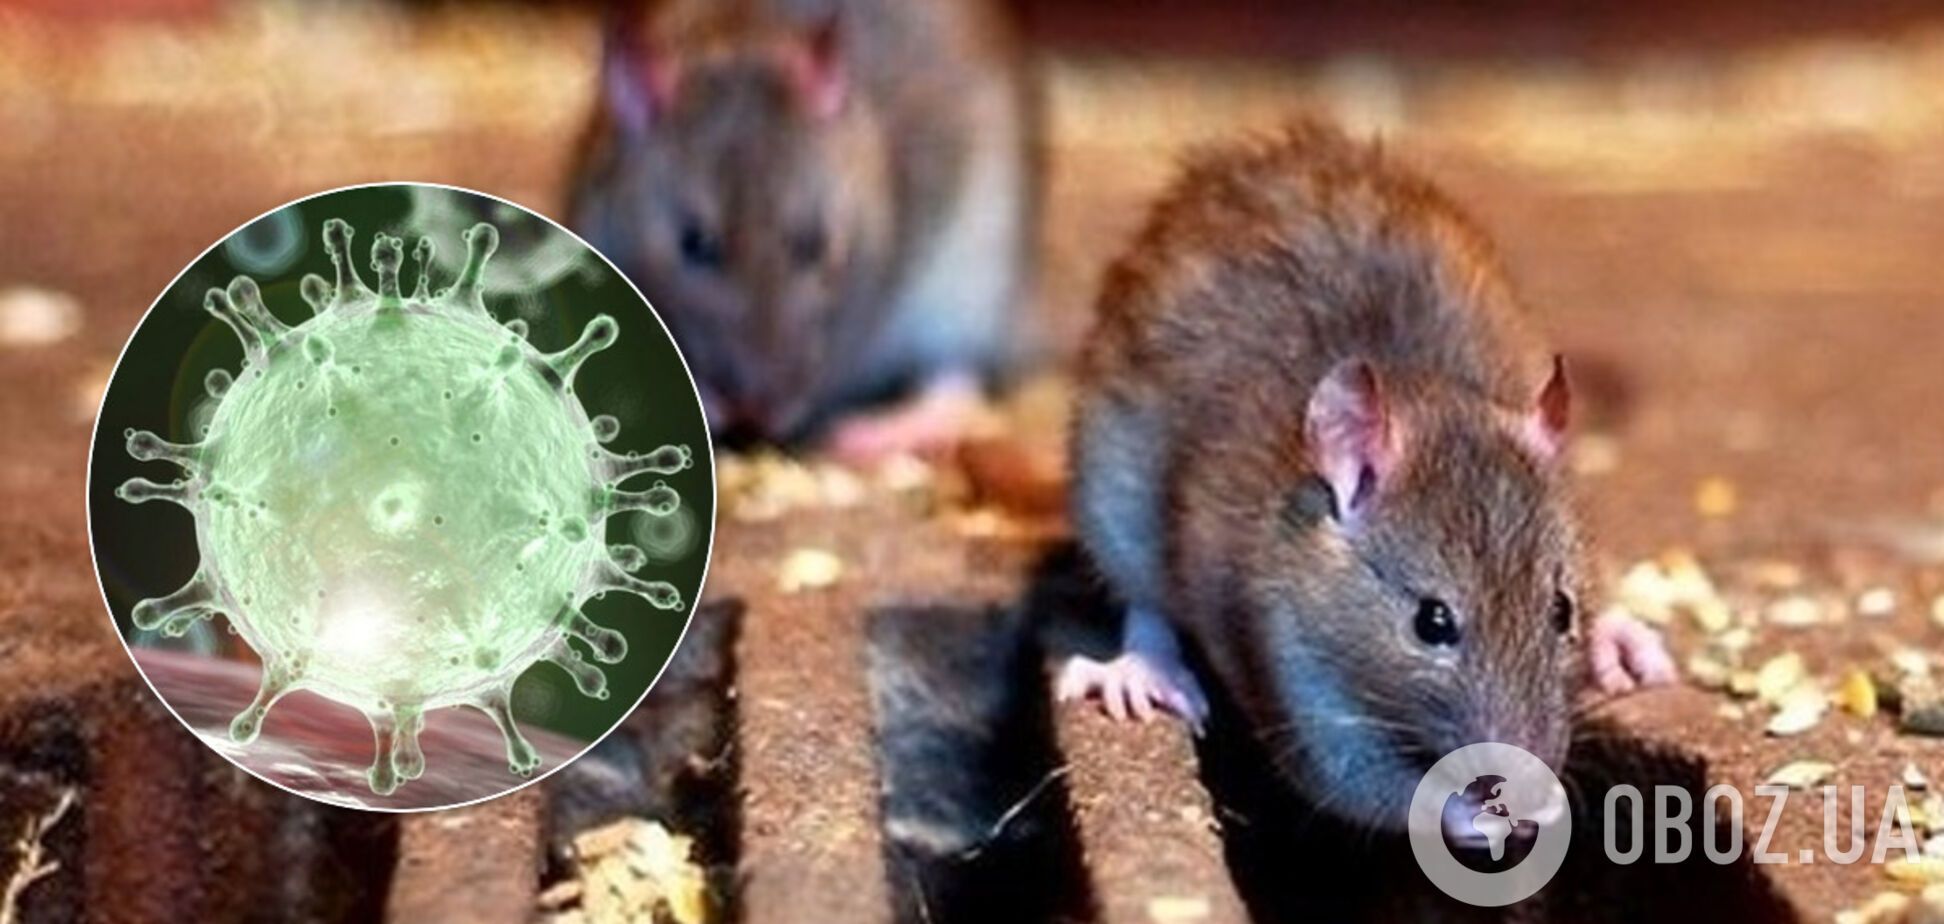 Из-за коронавируса крысы становятся каннибалами